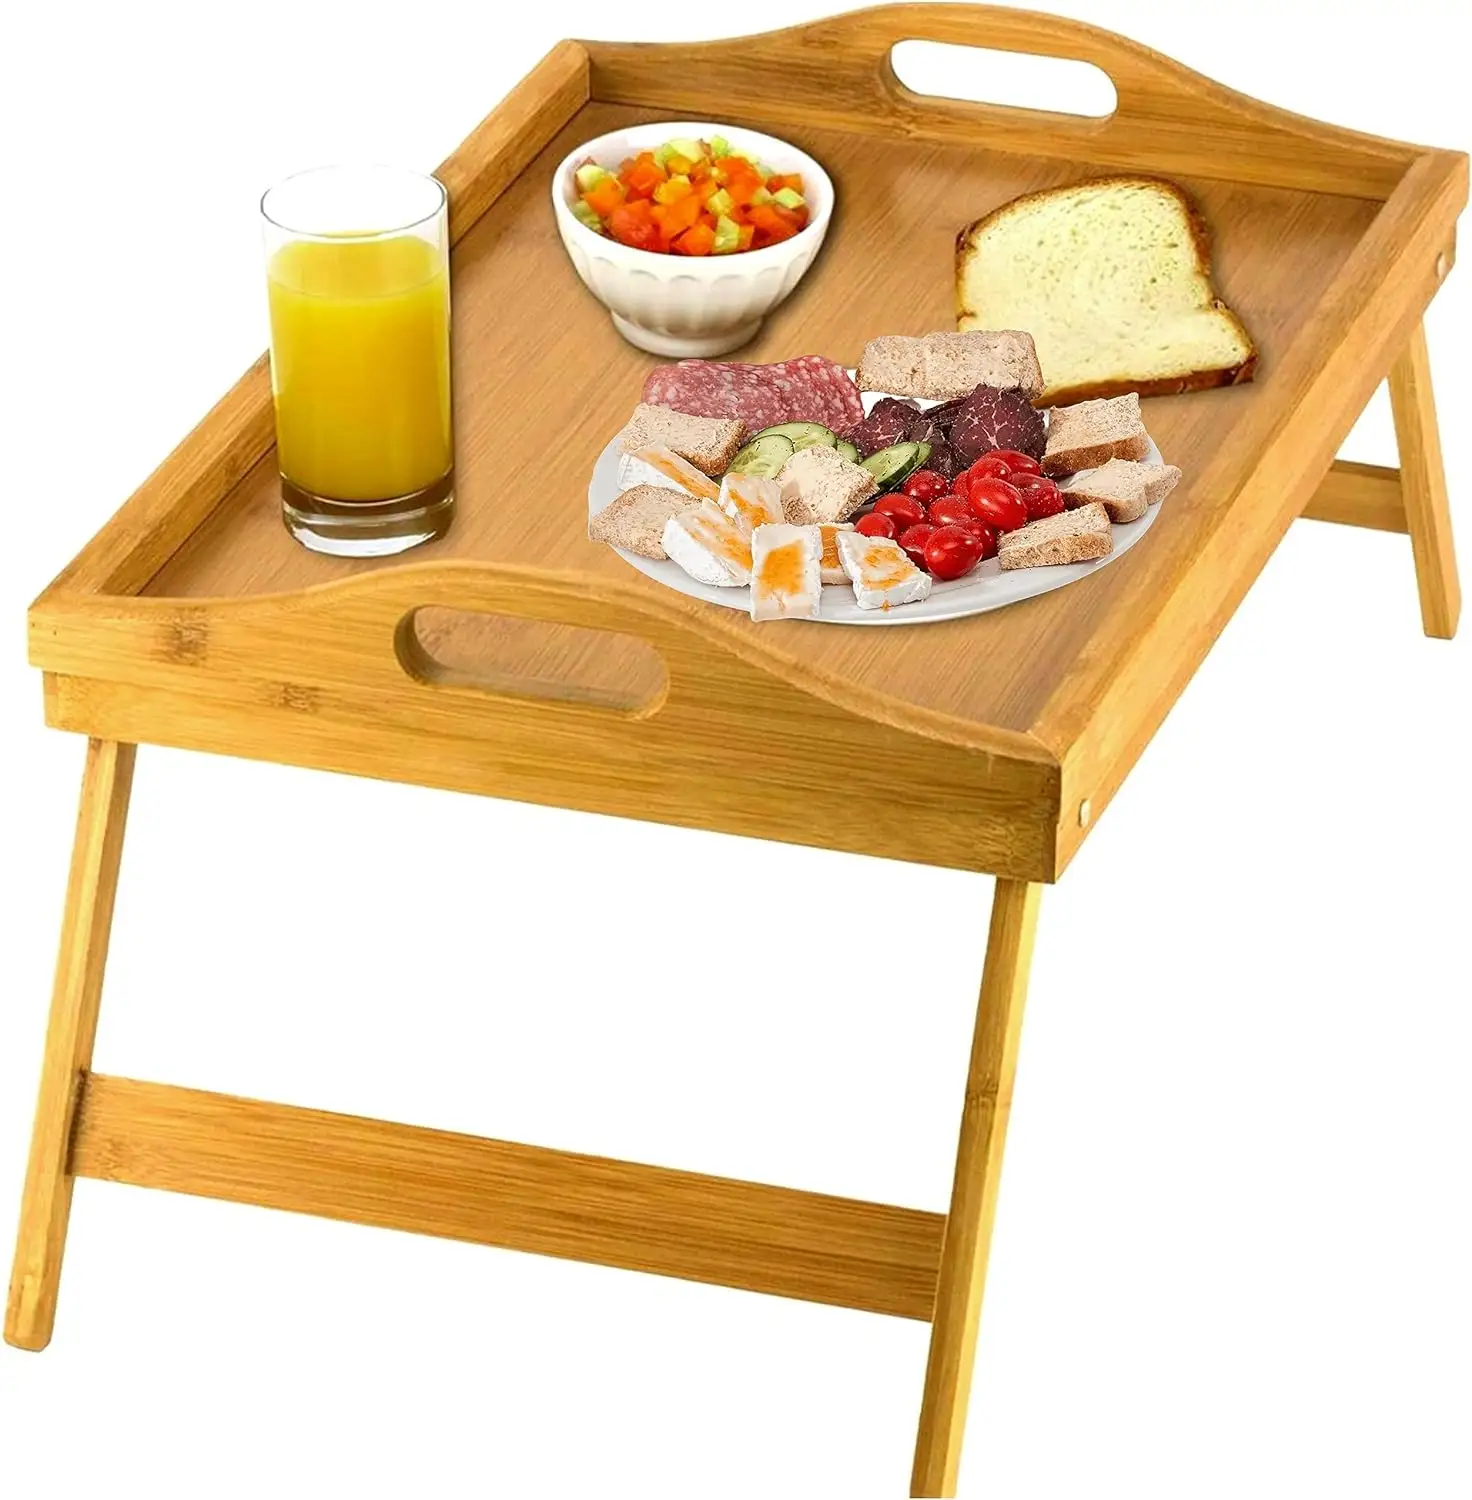 लकड़ी की नाश्ता ट्रे लकड़ी की ट्रे, फोल्डिंग पैरों के साथ बांस की लकड़ी की टेबल ट्रे